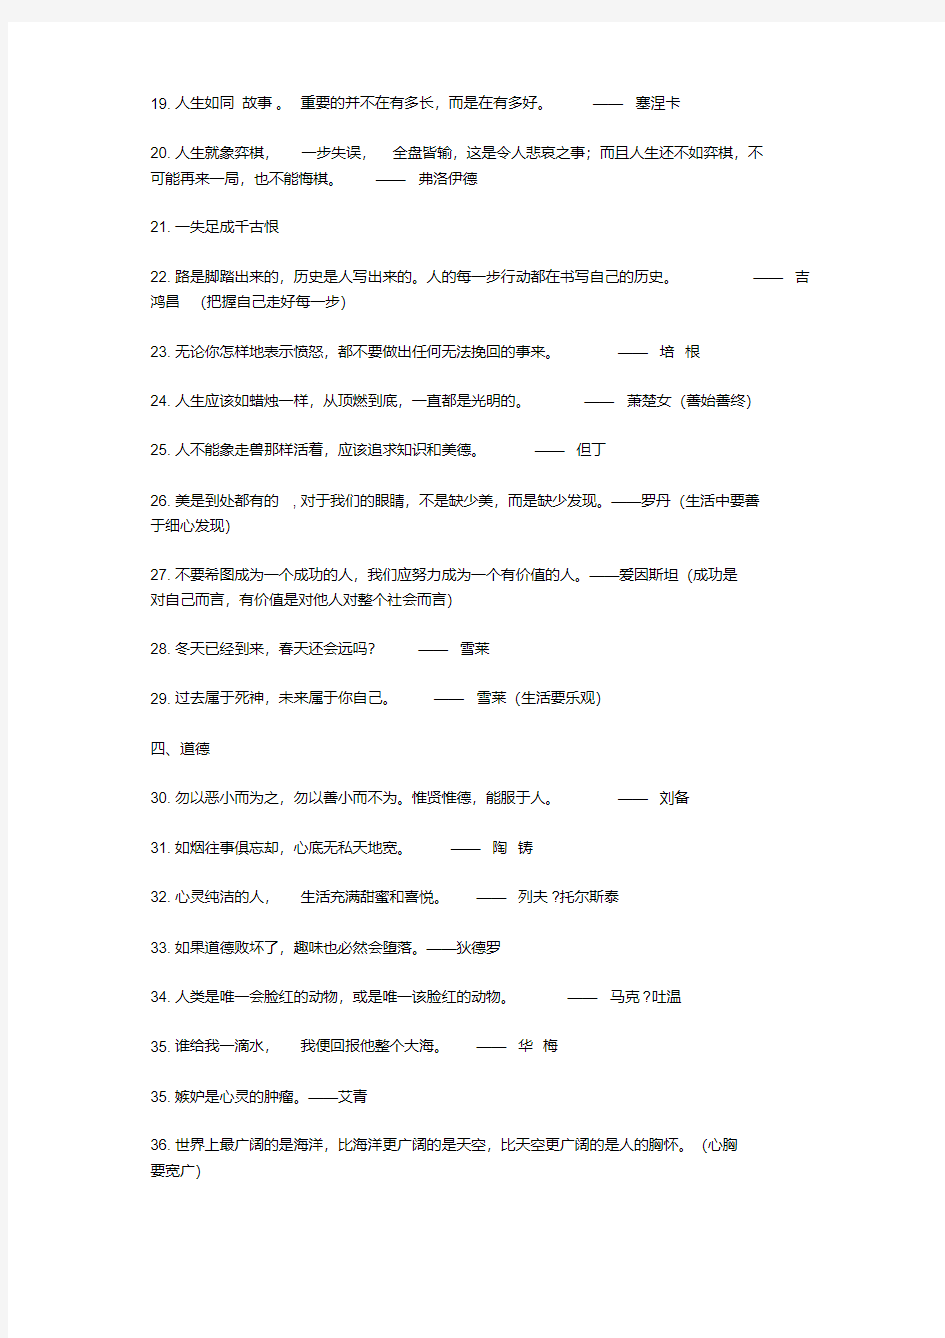 2019高考作文素材大全积累.pdf